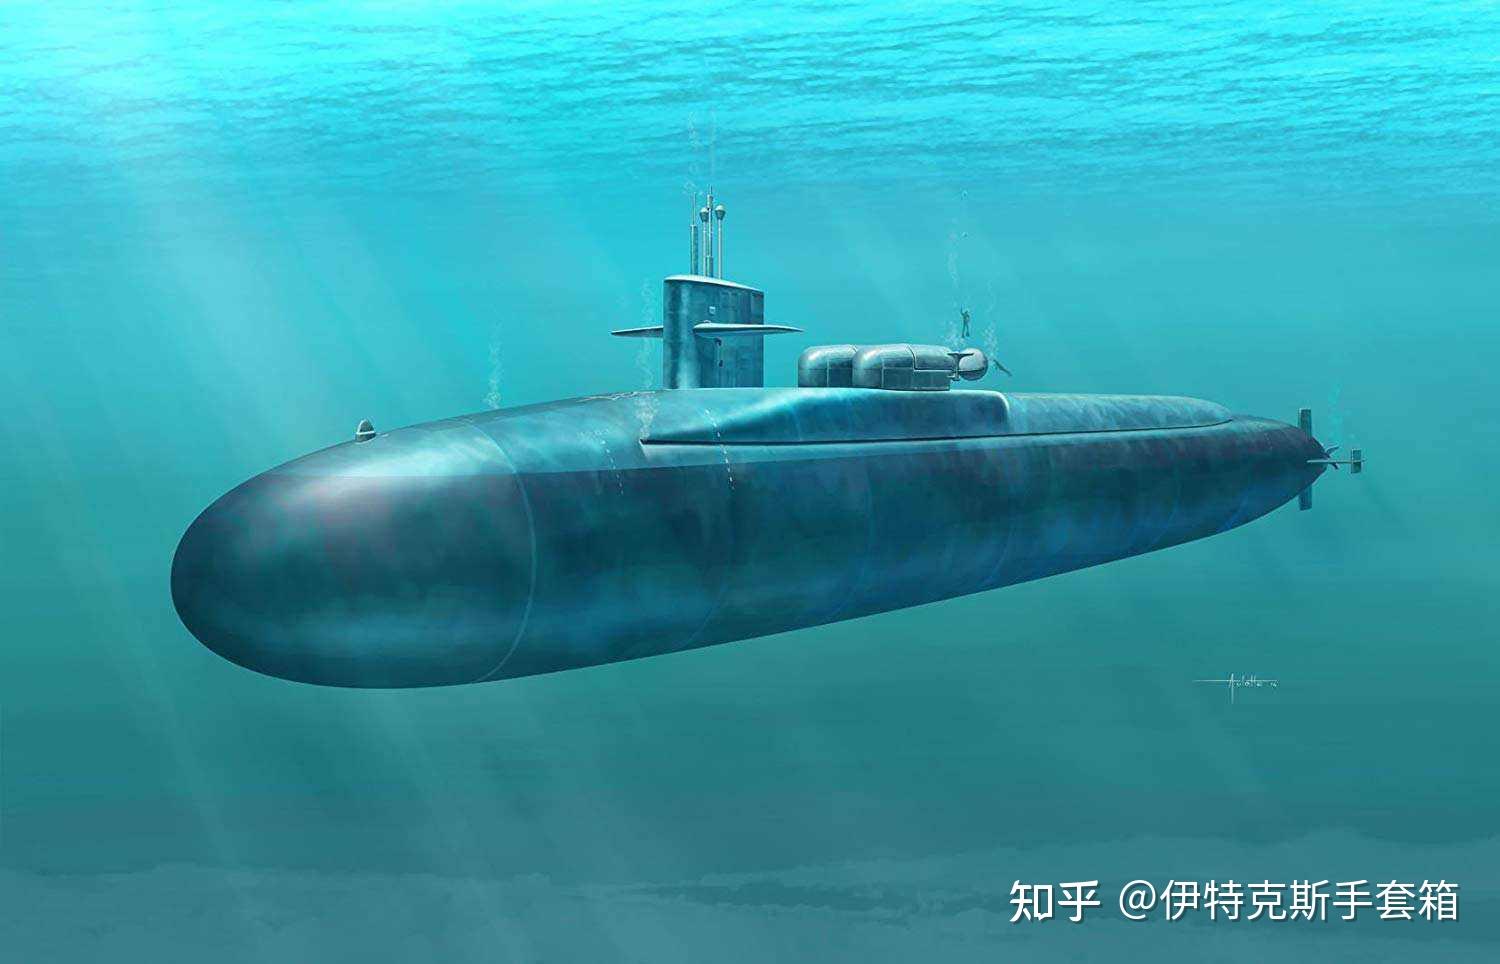 像潜艇这种有着特殊工作原理的舰艇,一面世就因为独特的工作环境被